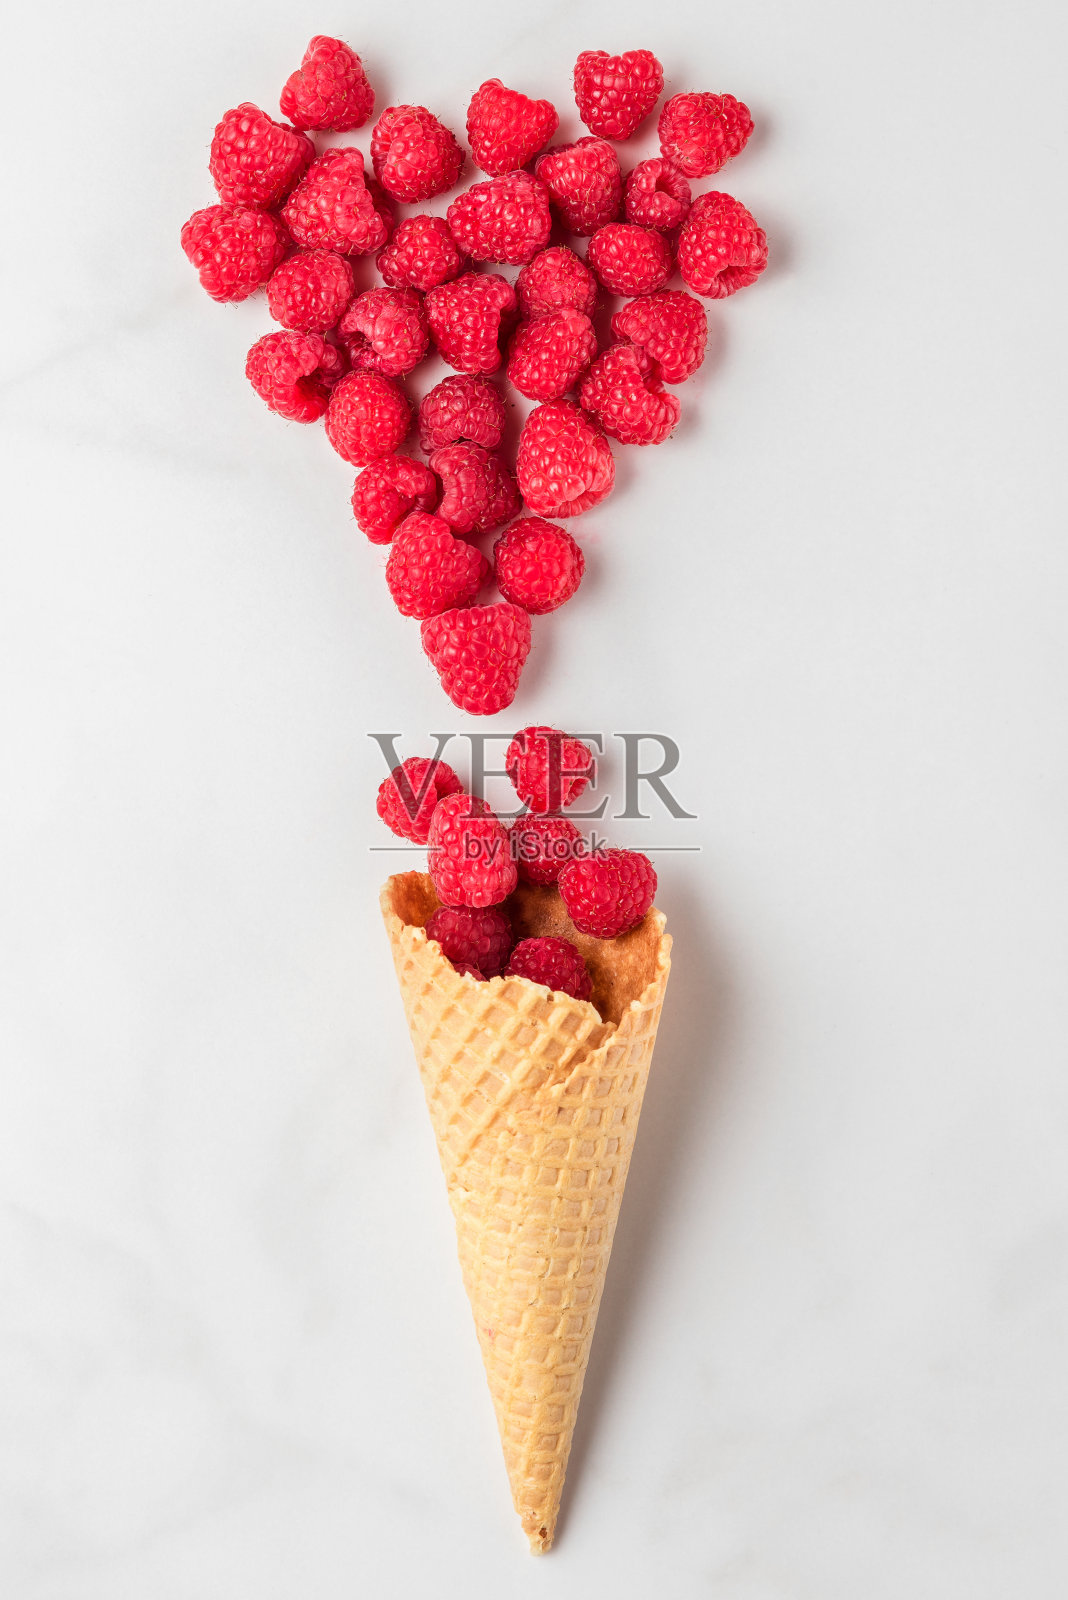 新鲜的夏季覆盆子在华夫蛋筒冰淇淋，心形的浆果在白色大理石的背景照片摄影图片